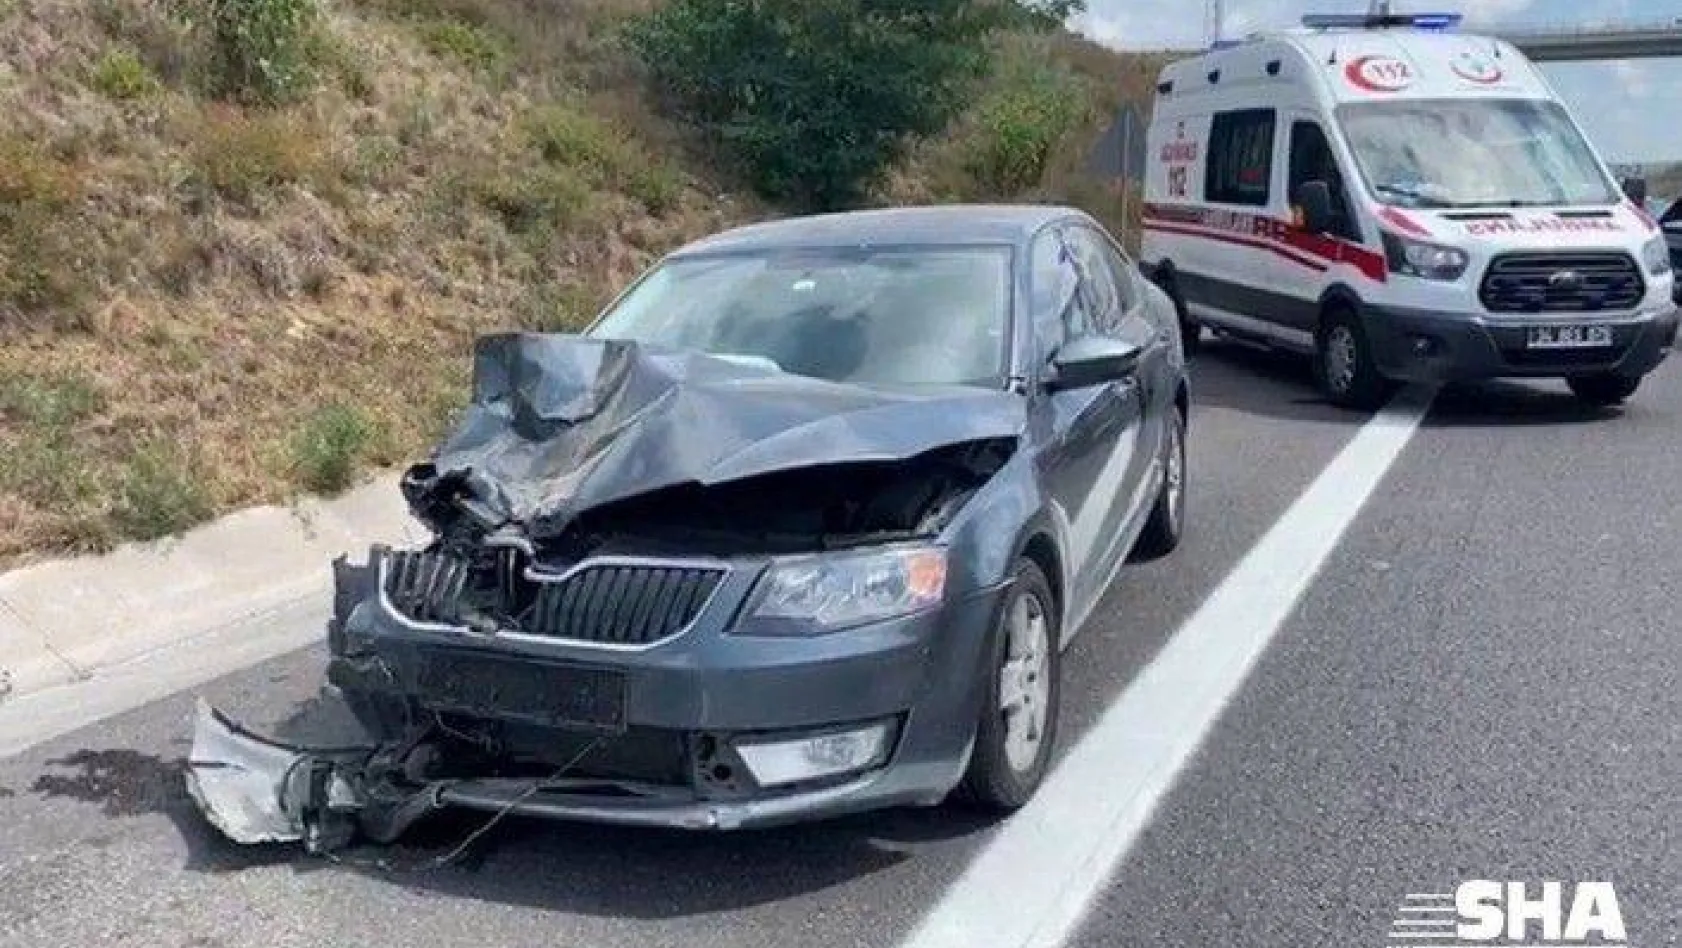 Kuzey Marmara Otoyolu Edirne istikameti Sarıyer mevkiinde iki otomobilin karıştığı trafik kazasında 1 kişi öldü, 4 kişi yaralandı.